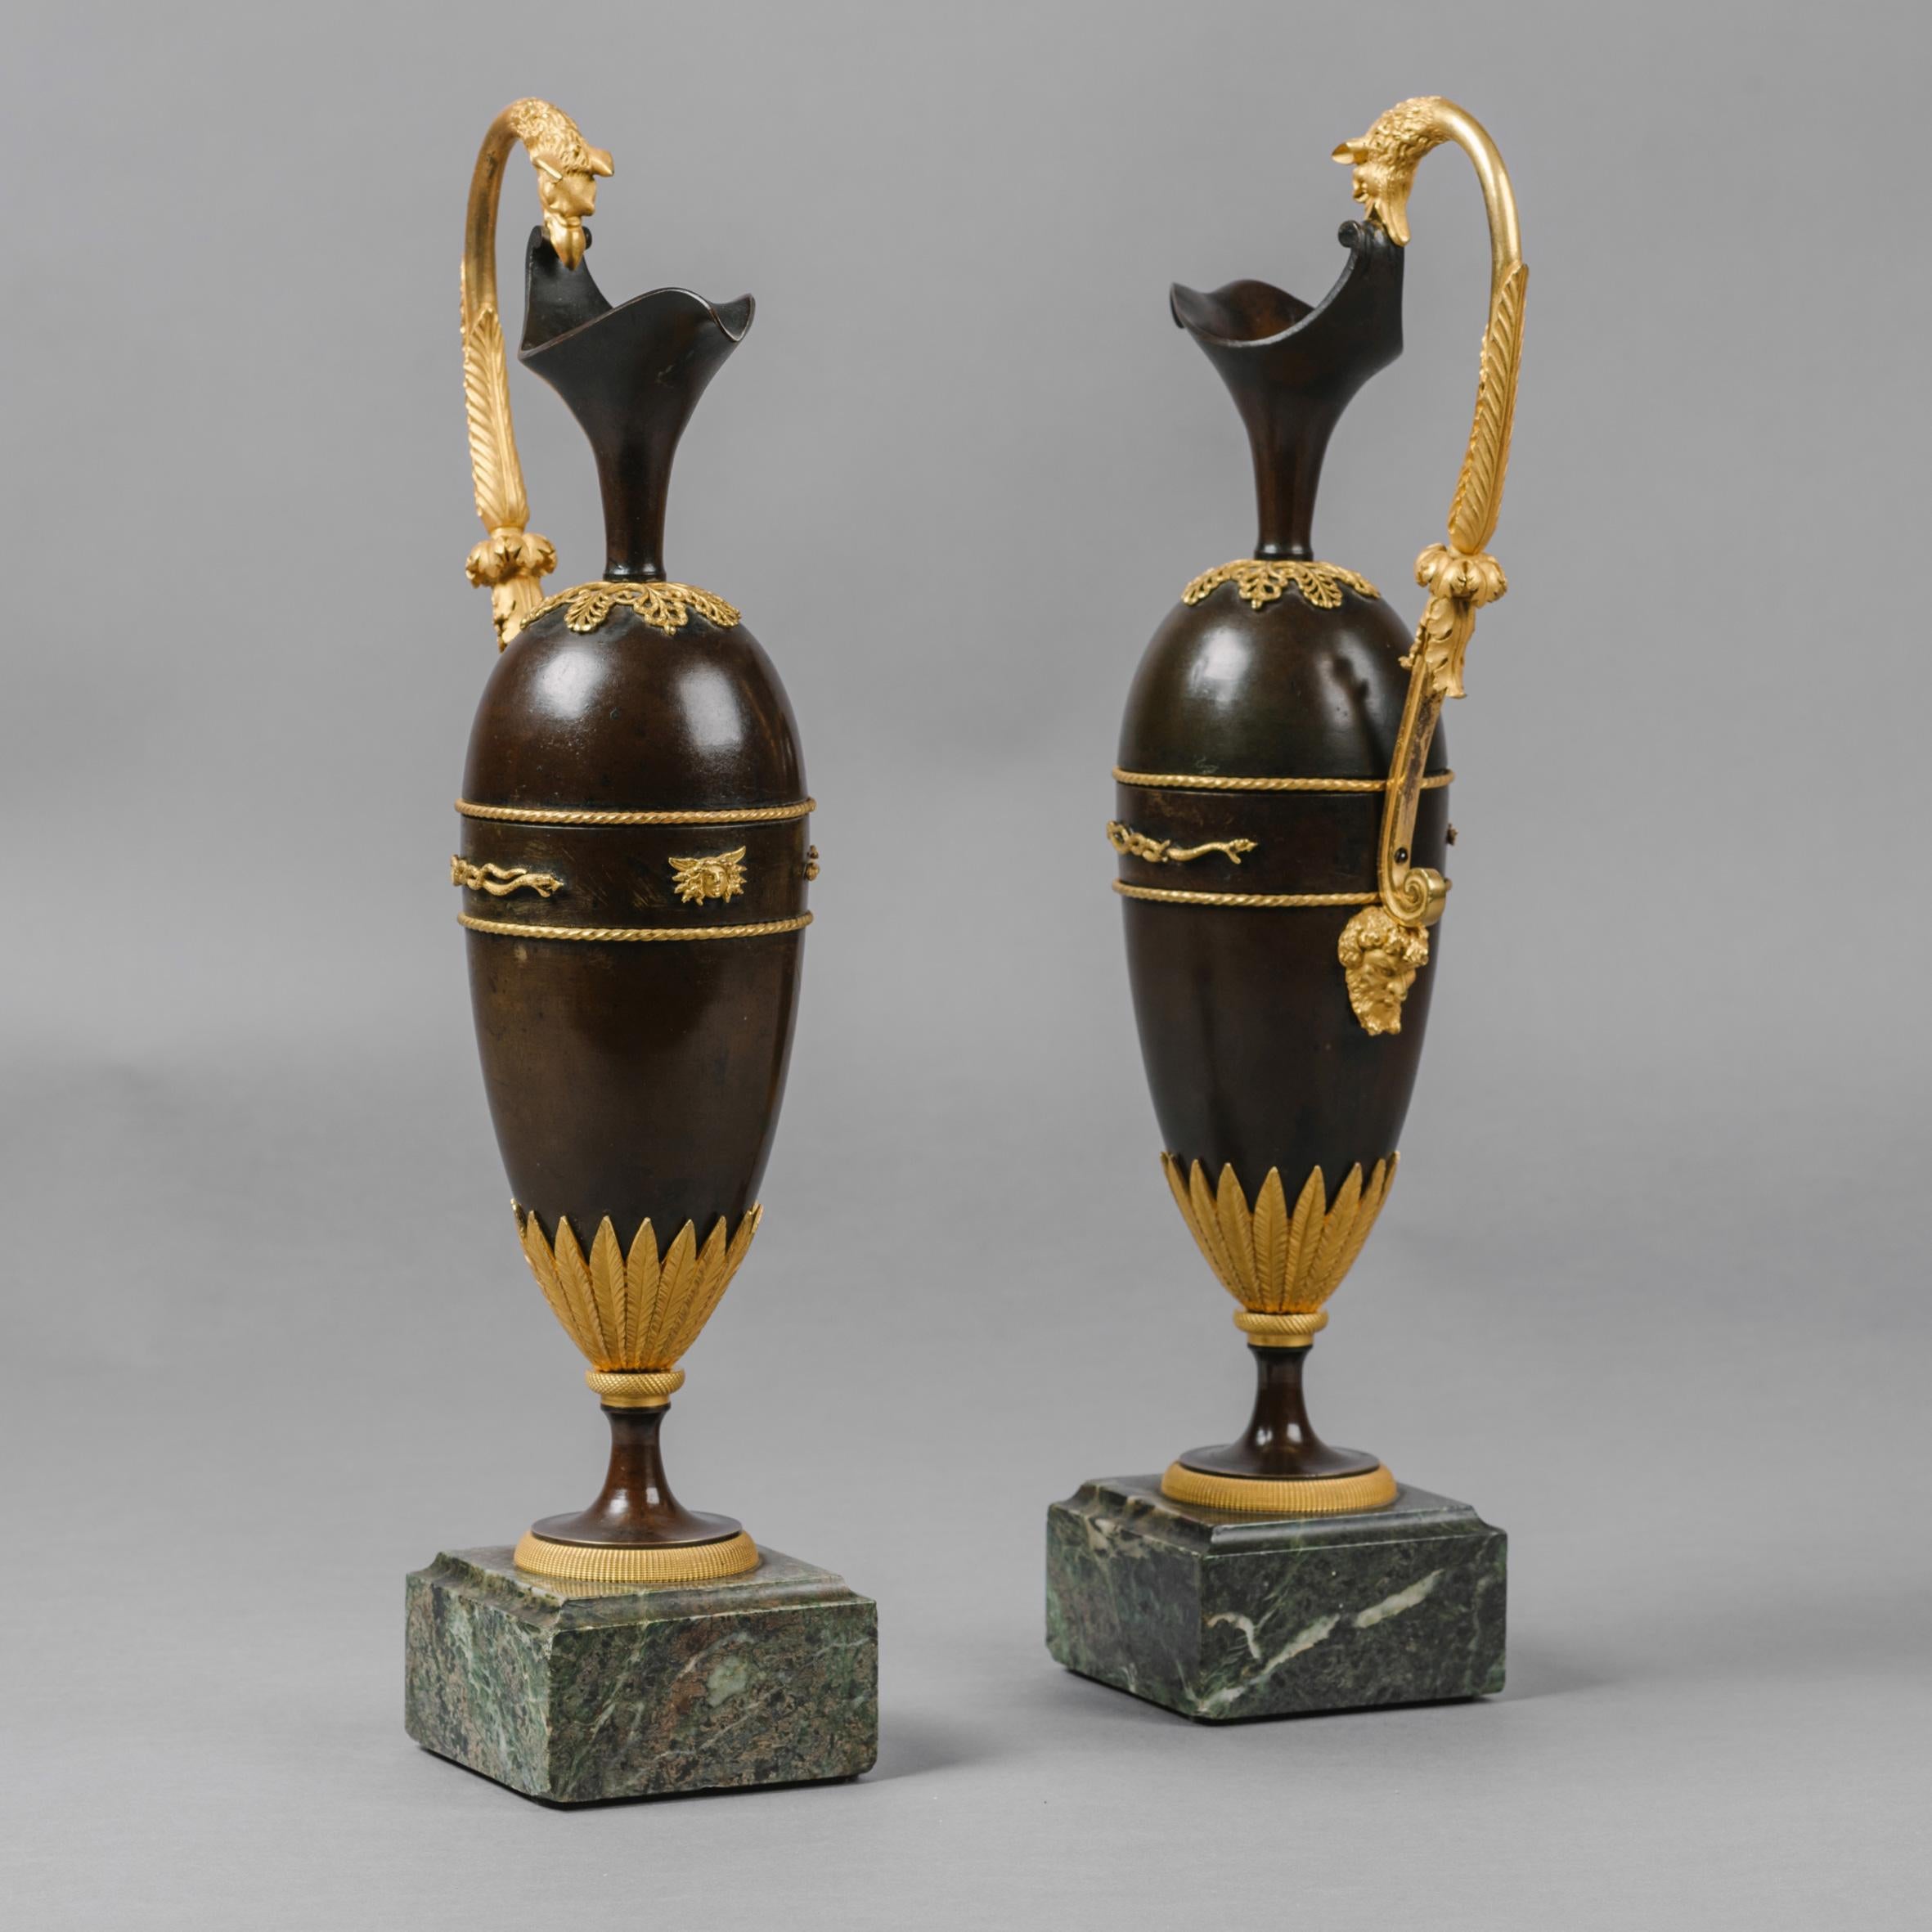 Une belle paire d'aiguières empire en bronze doré et patiné à la manière de Claude Galle.

Français, vers 1820.